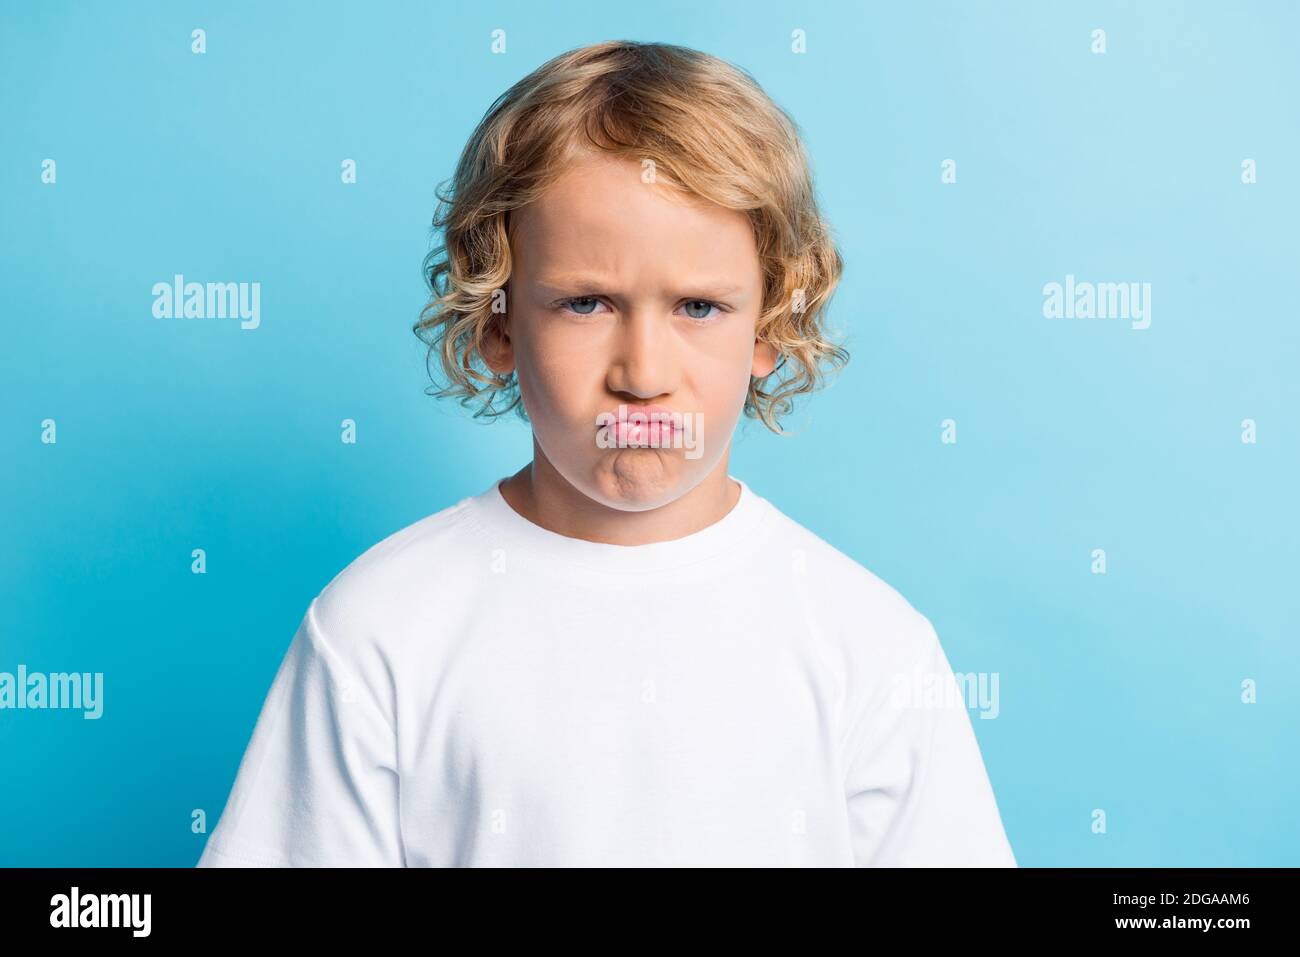 Foto di ragazzino con viso grimace che si sente deluso usura t-shirt bianca isolata su sfondo blu Foto Stock